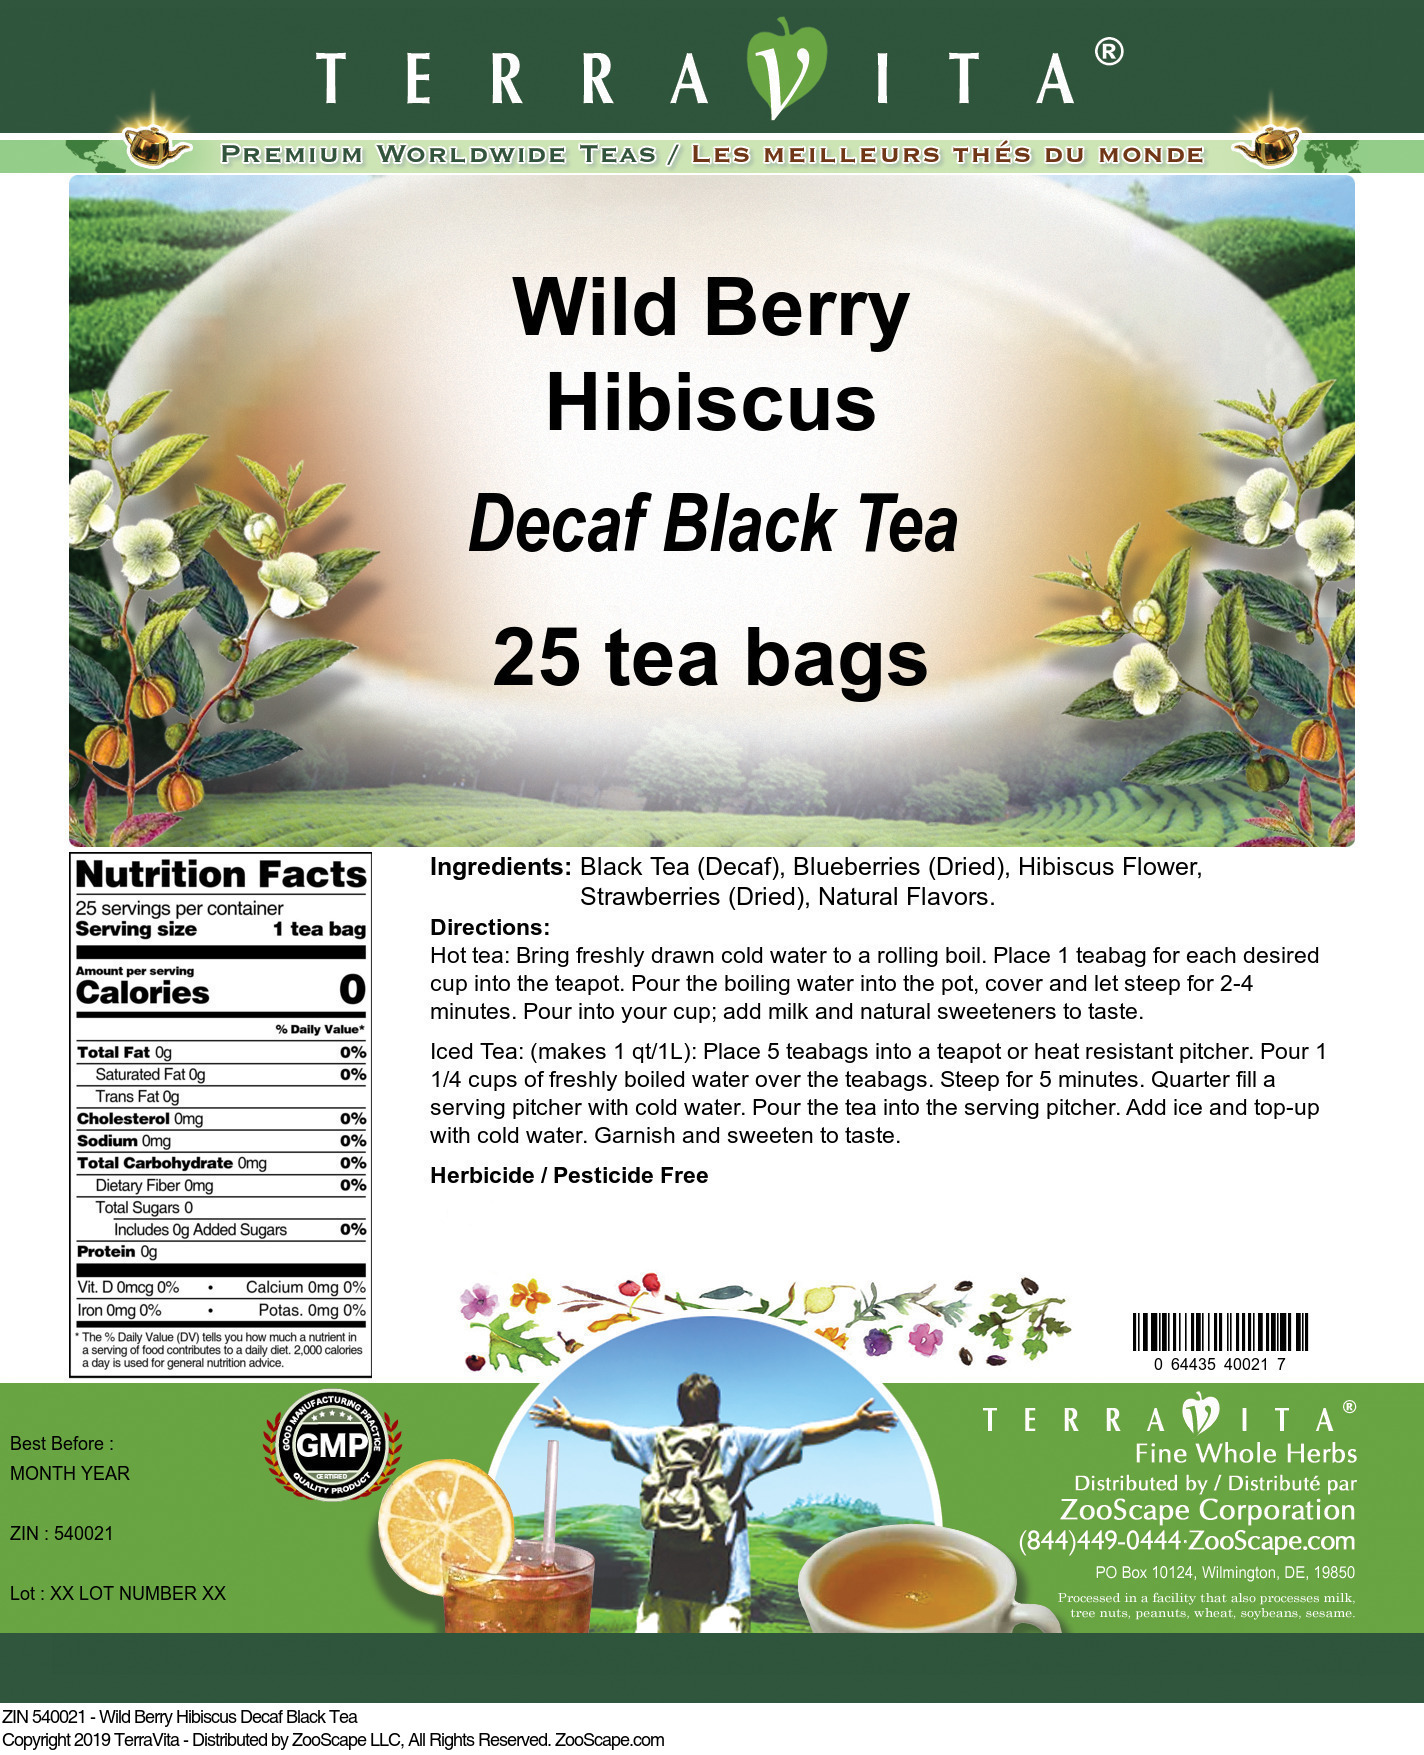 Wild Berry Hibiscus Decaf Black Tea - Label